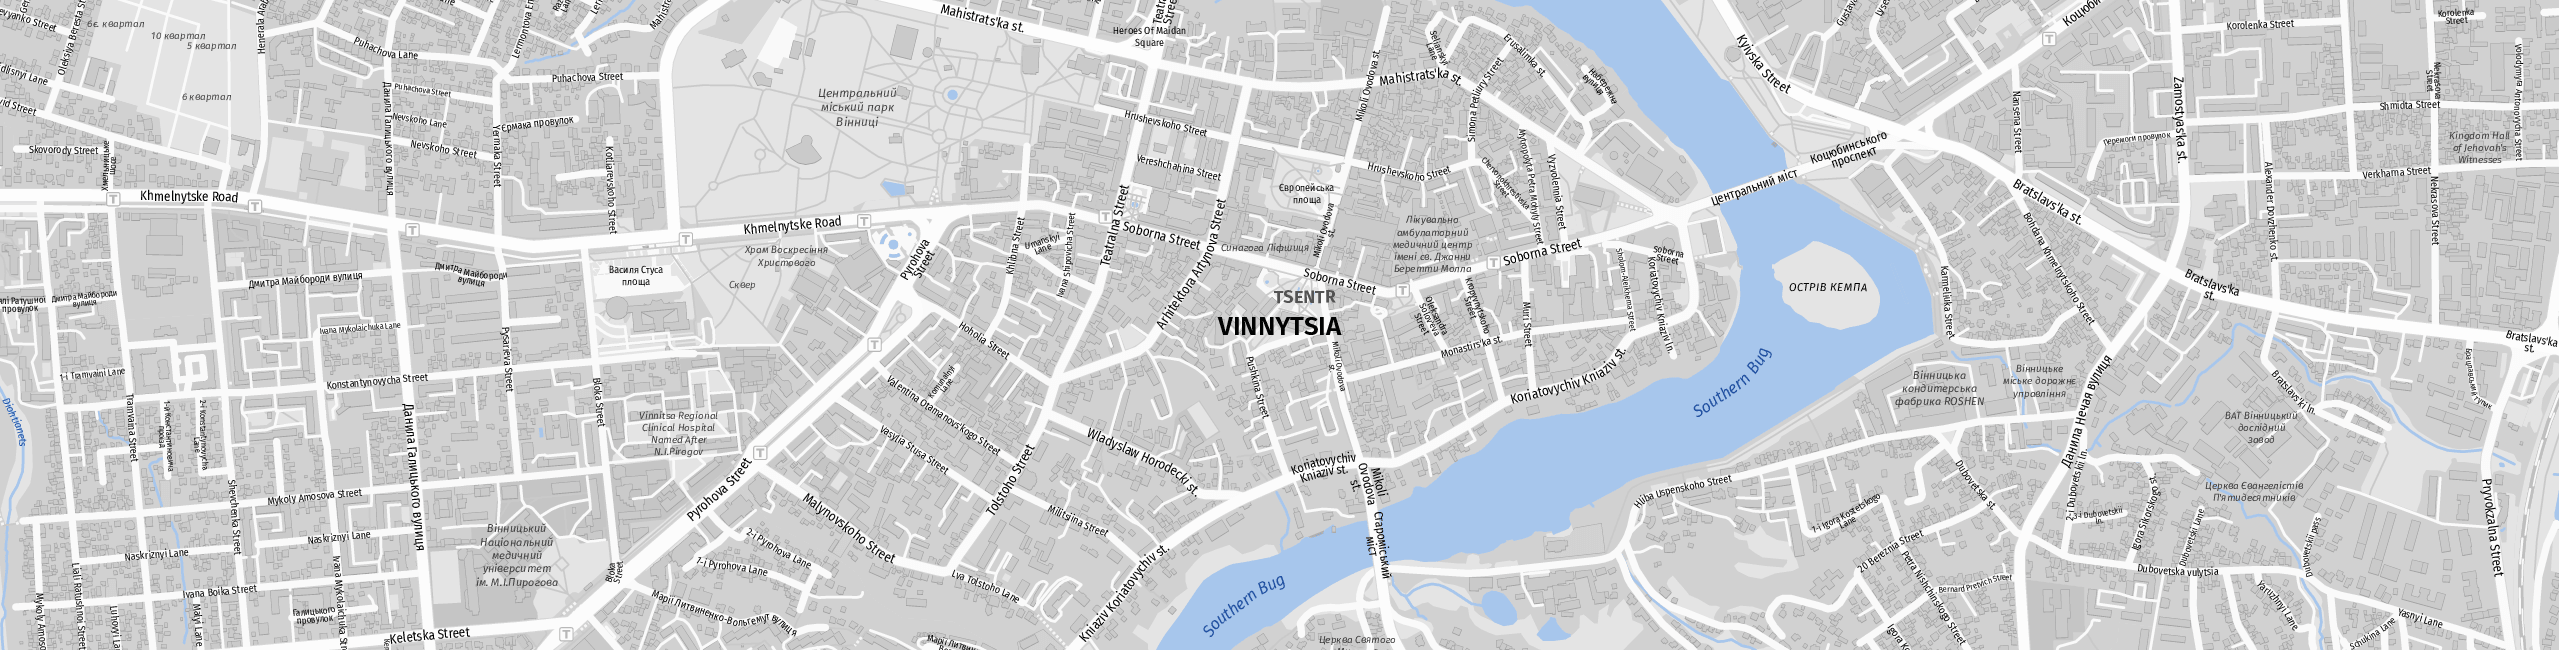 Stadtplan Vinnytsia zum Downloaden.